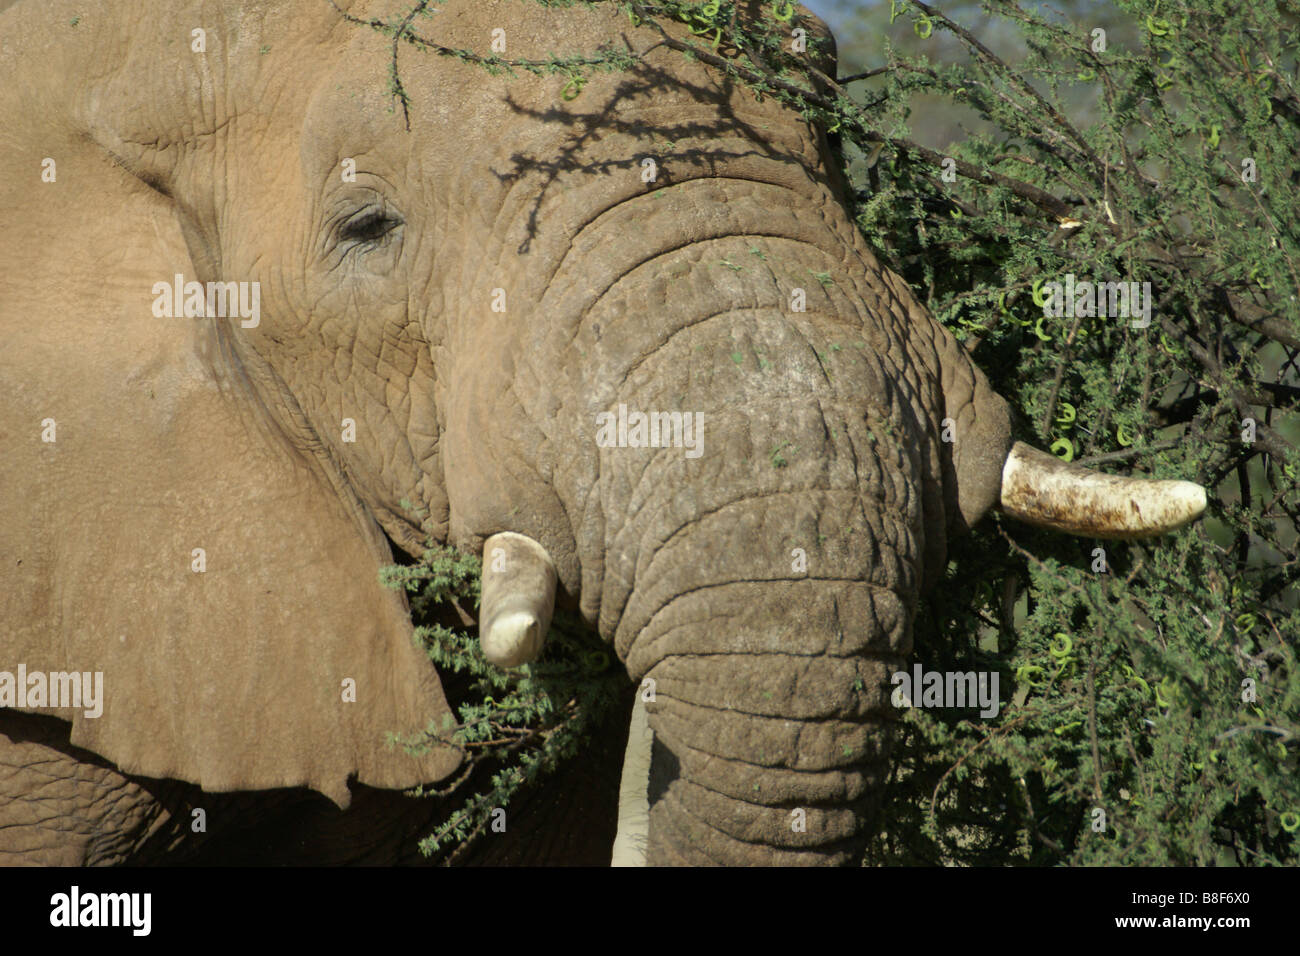 Libre d'elephant naviguant sur Acacia, Samburu, Kenya Banque D'Images